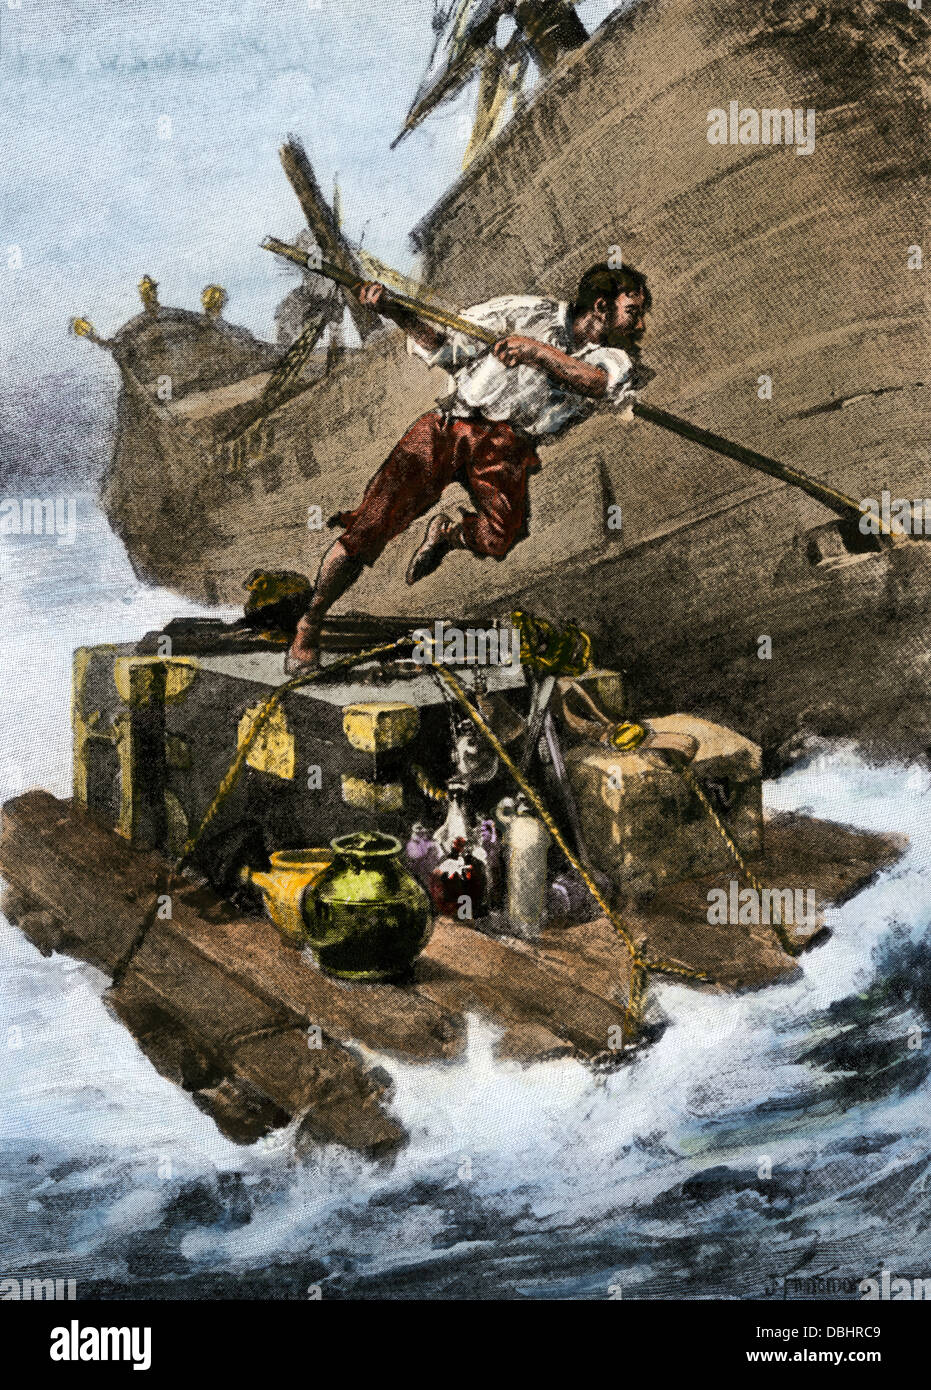 Robinson Crusoe Flucht aus dem sinkenden Schiff, von der Daniel Defoe Roman. Handcolorierte halftone Reproduktion eines Abbildung Stockfoto